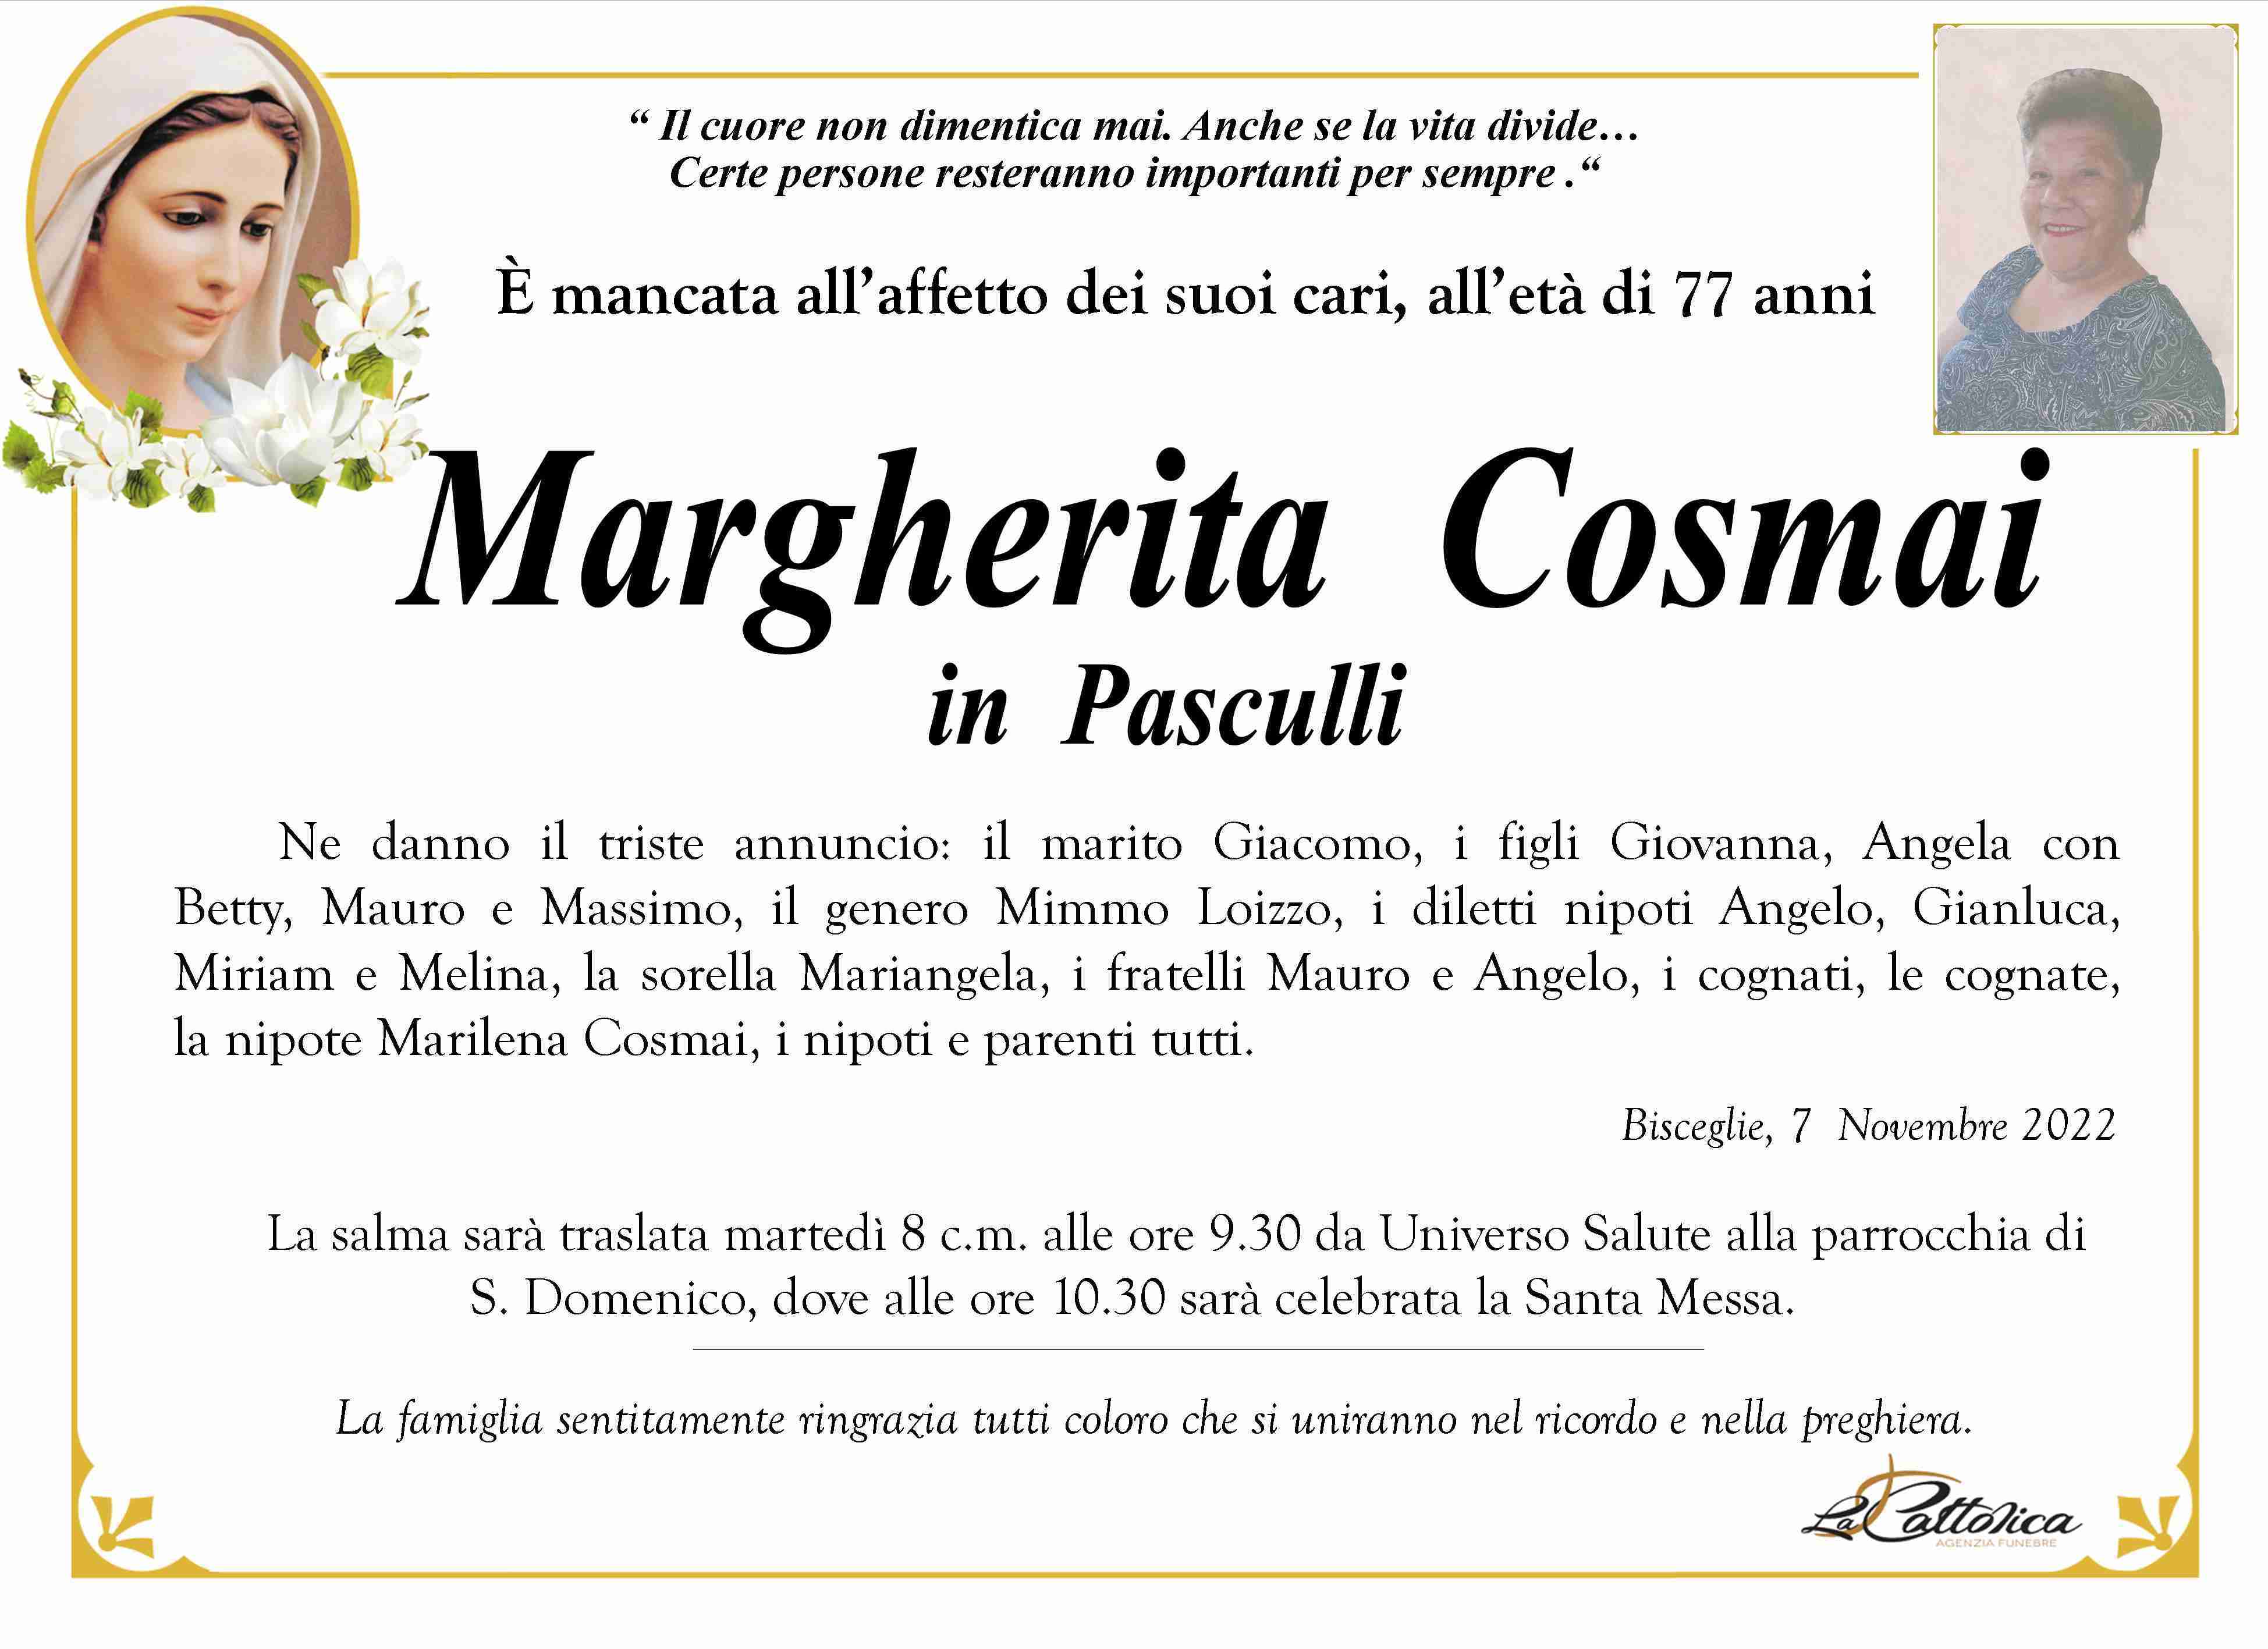 Margherita Cosmai